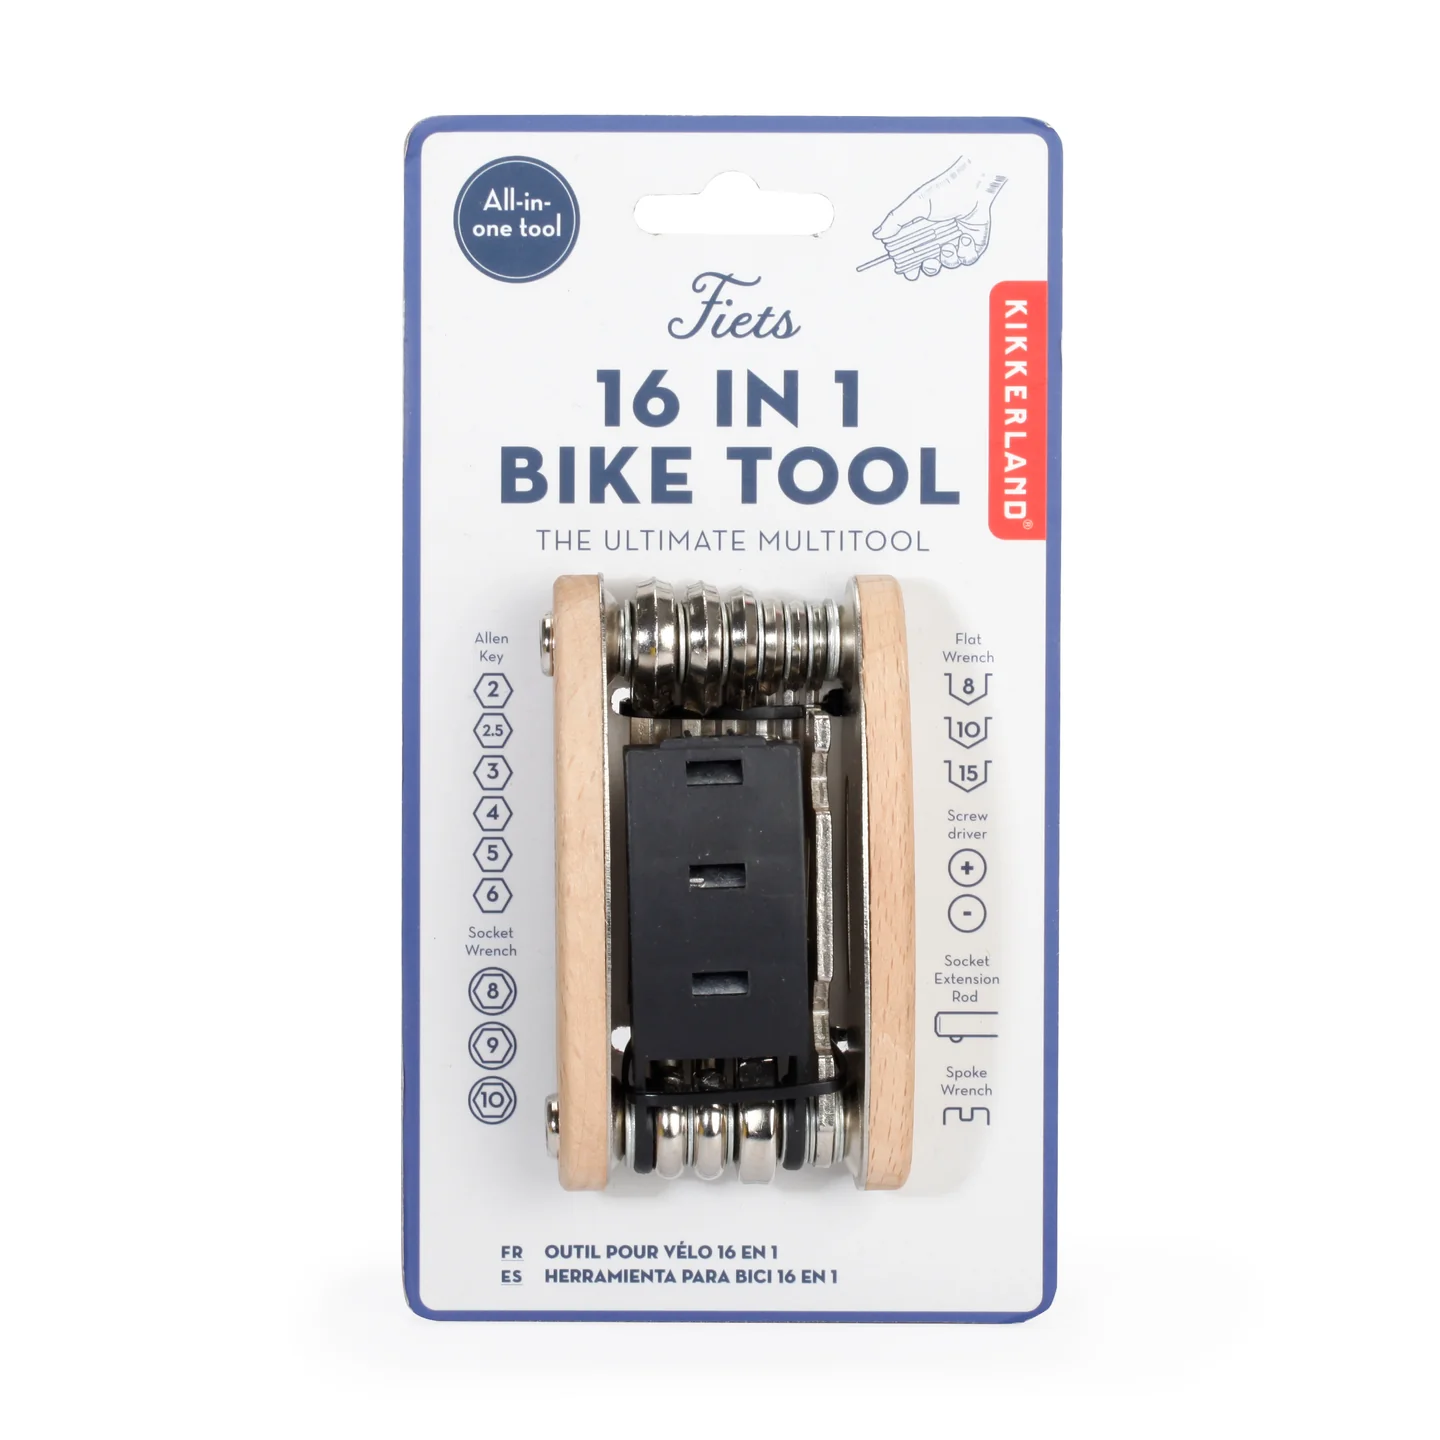 16 in 1 bike tool by Kikkerland